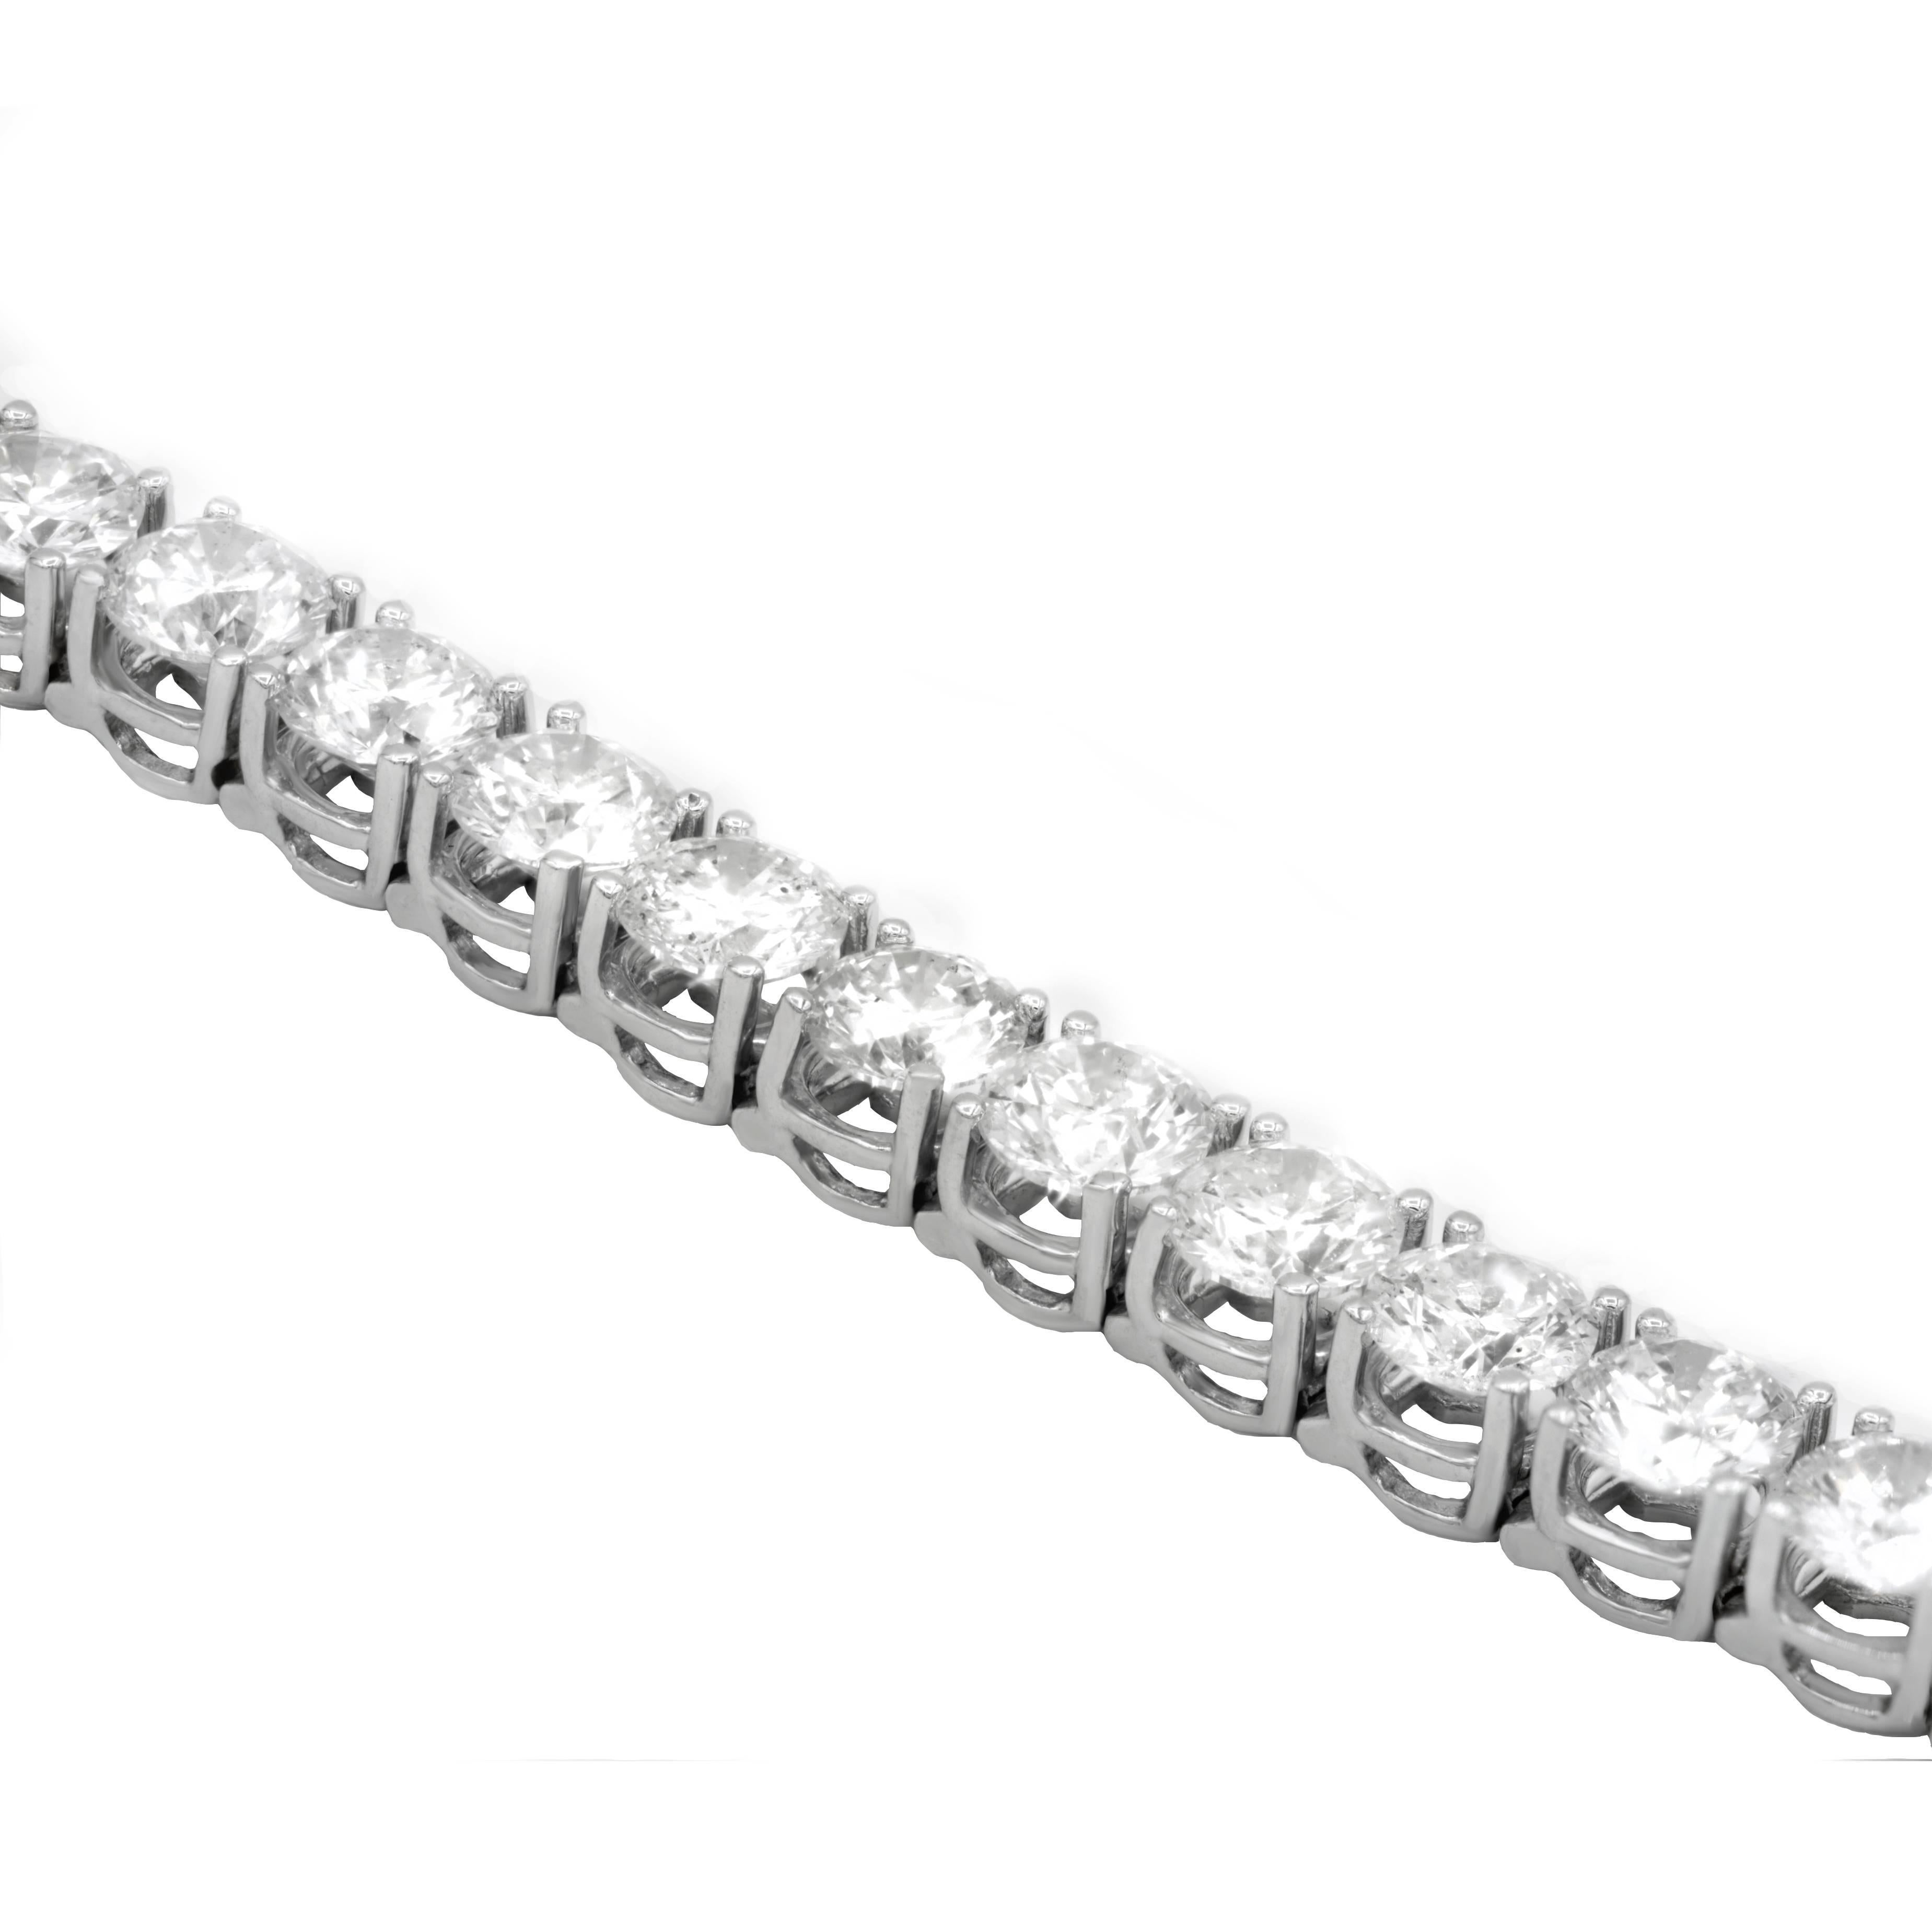 Bracelet de tennis classique à quatre branches composé de 33 diamants ronds de taille brillant, pesant 20,35 carats au total, de couleur GH et de pureté légèrement incluse, sertis dans une monture en or blanc 18 carats.